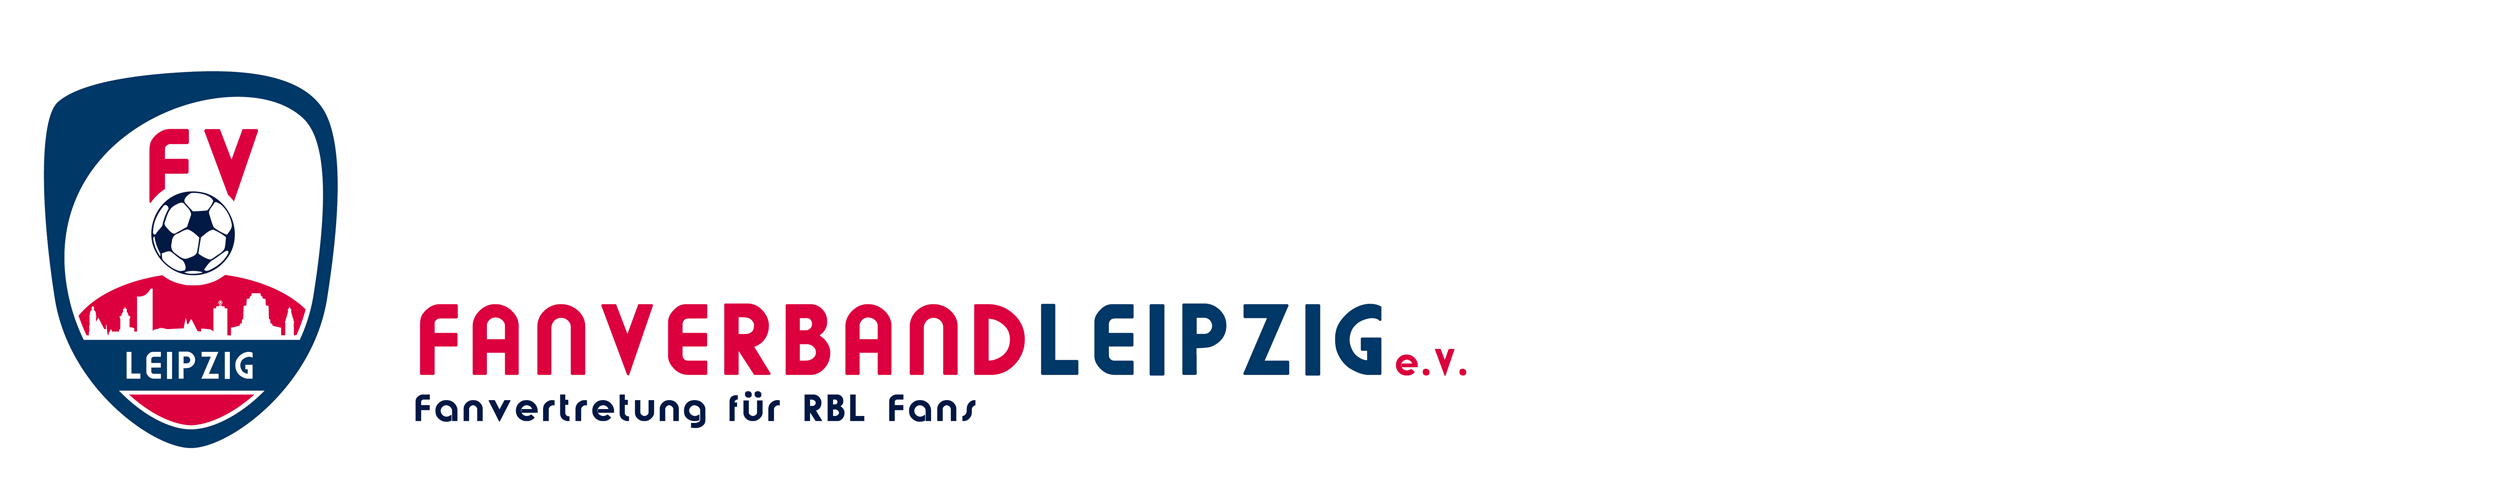 Fanverband Leipzig e. V.